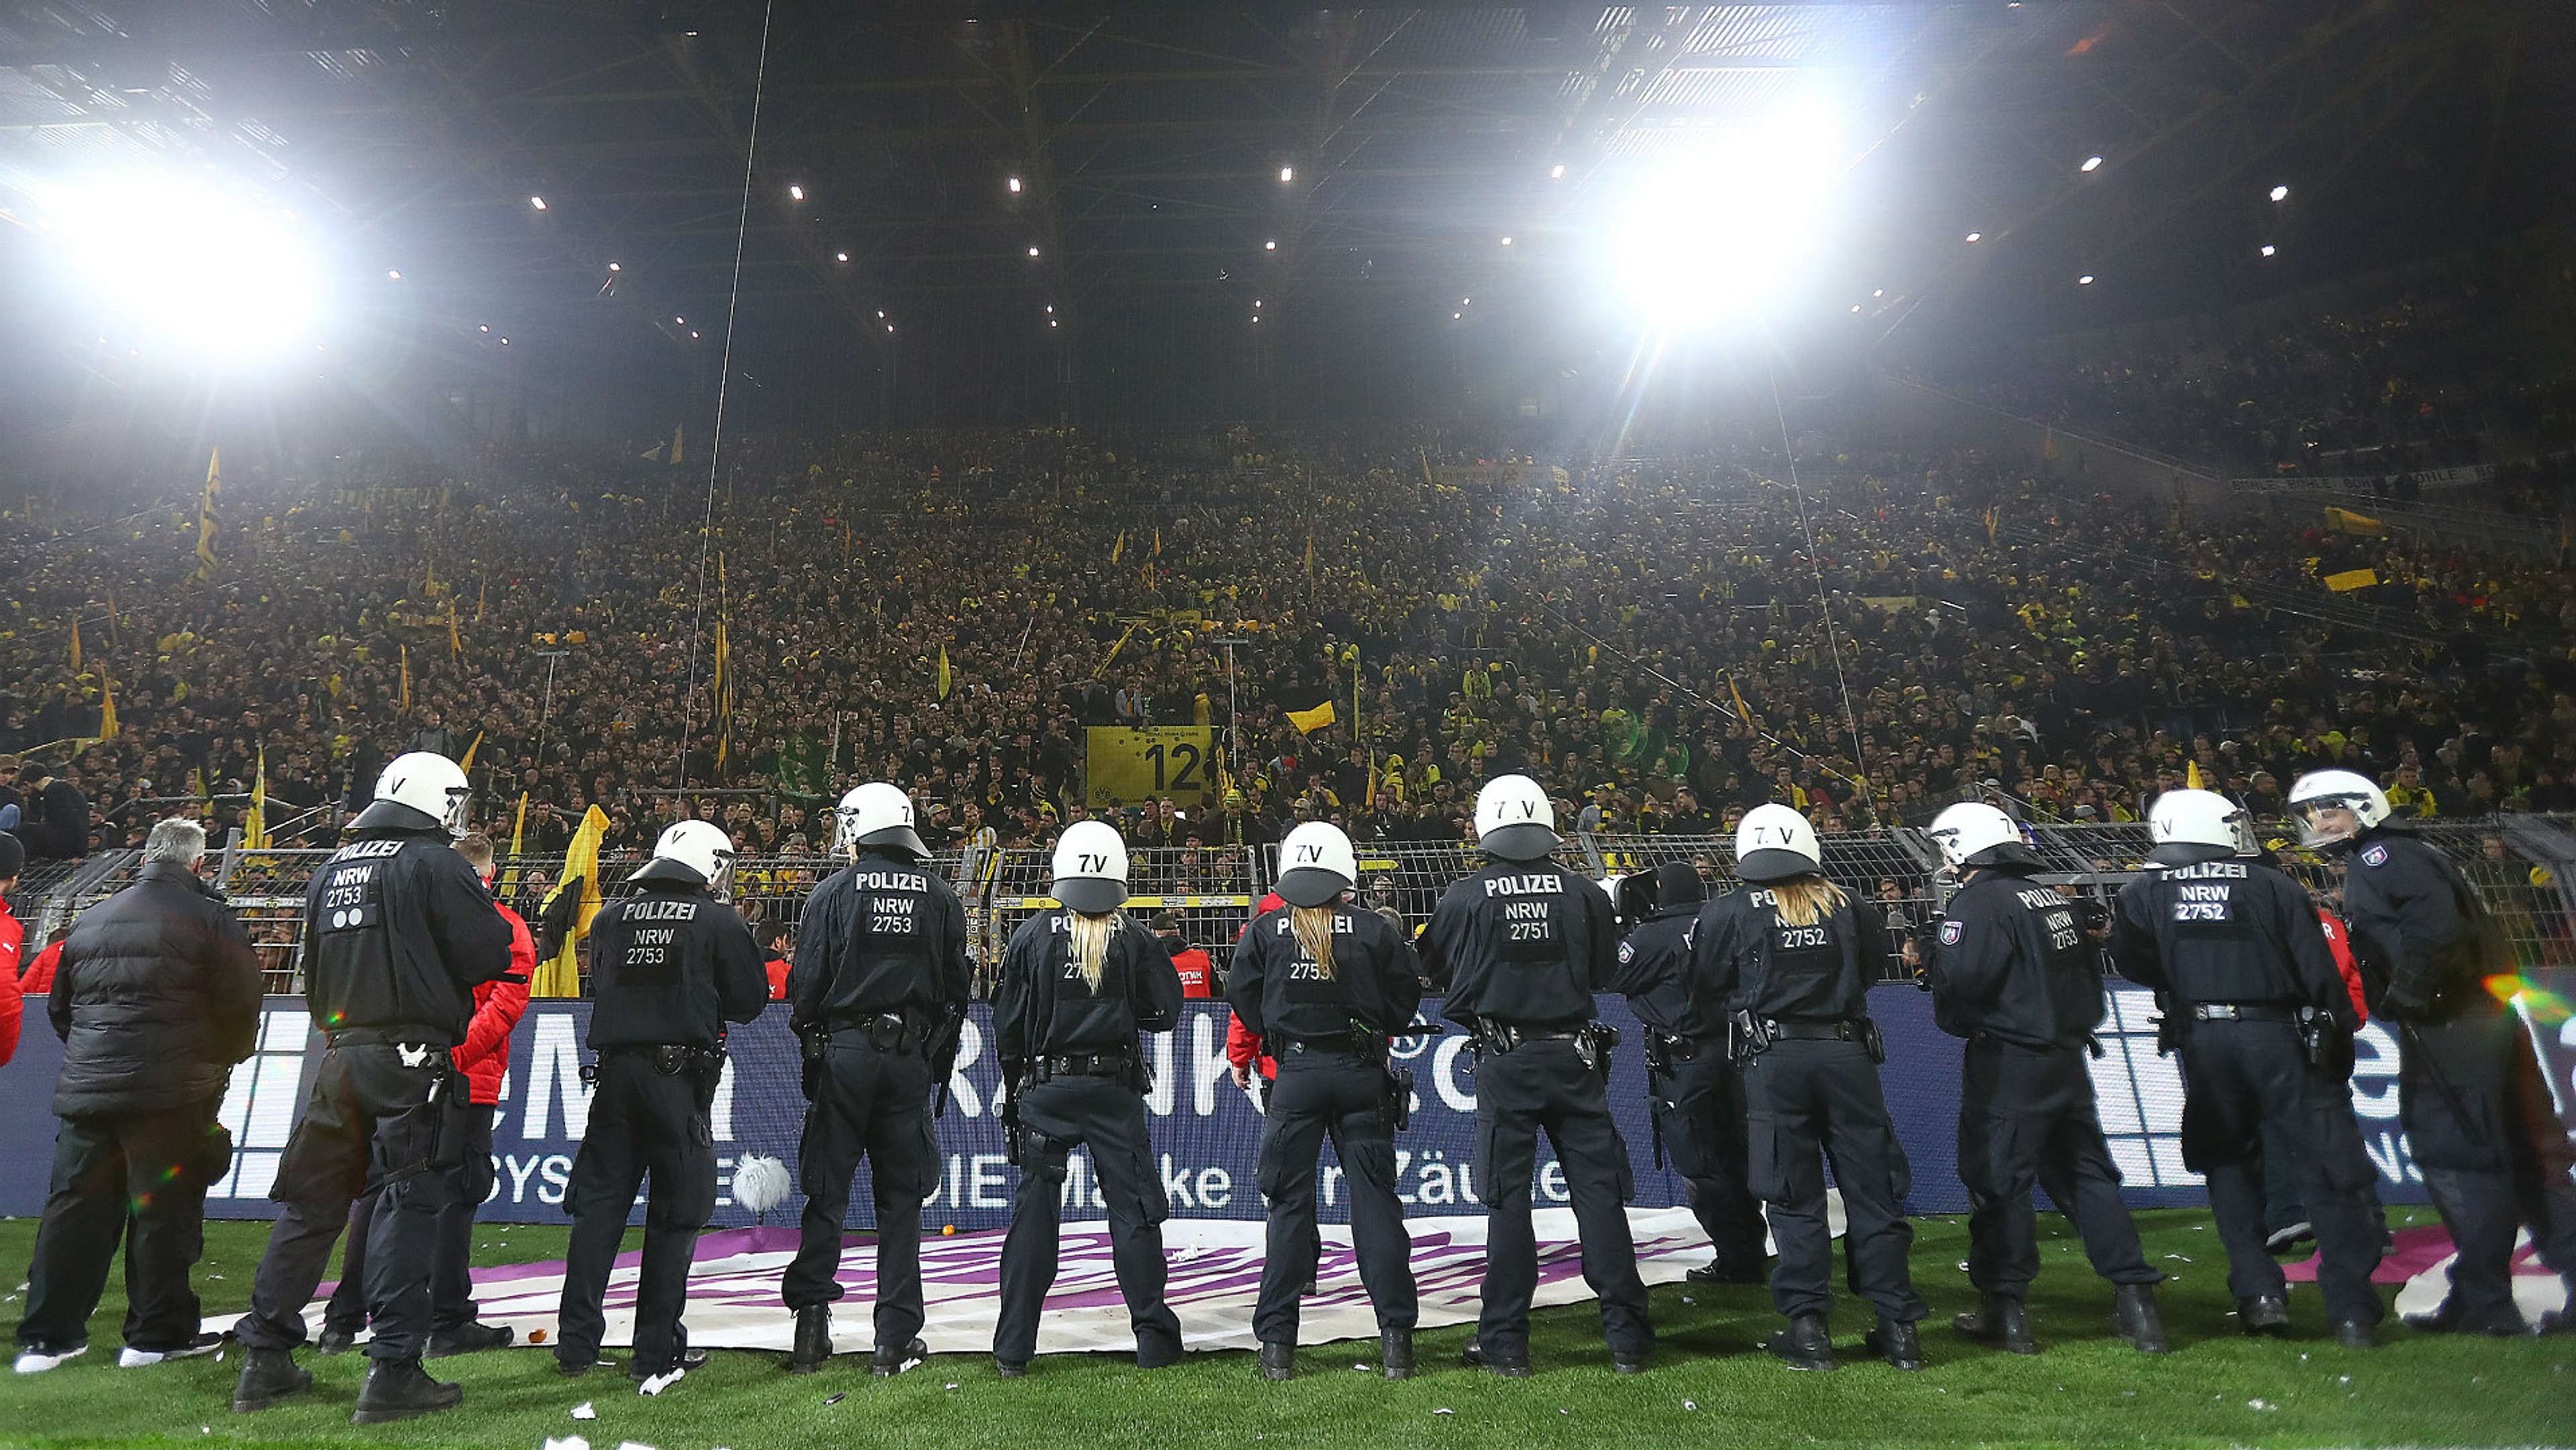 Borussia Dortmund v Schalke, police, 17/18